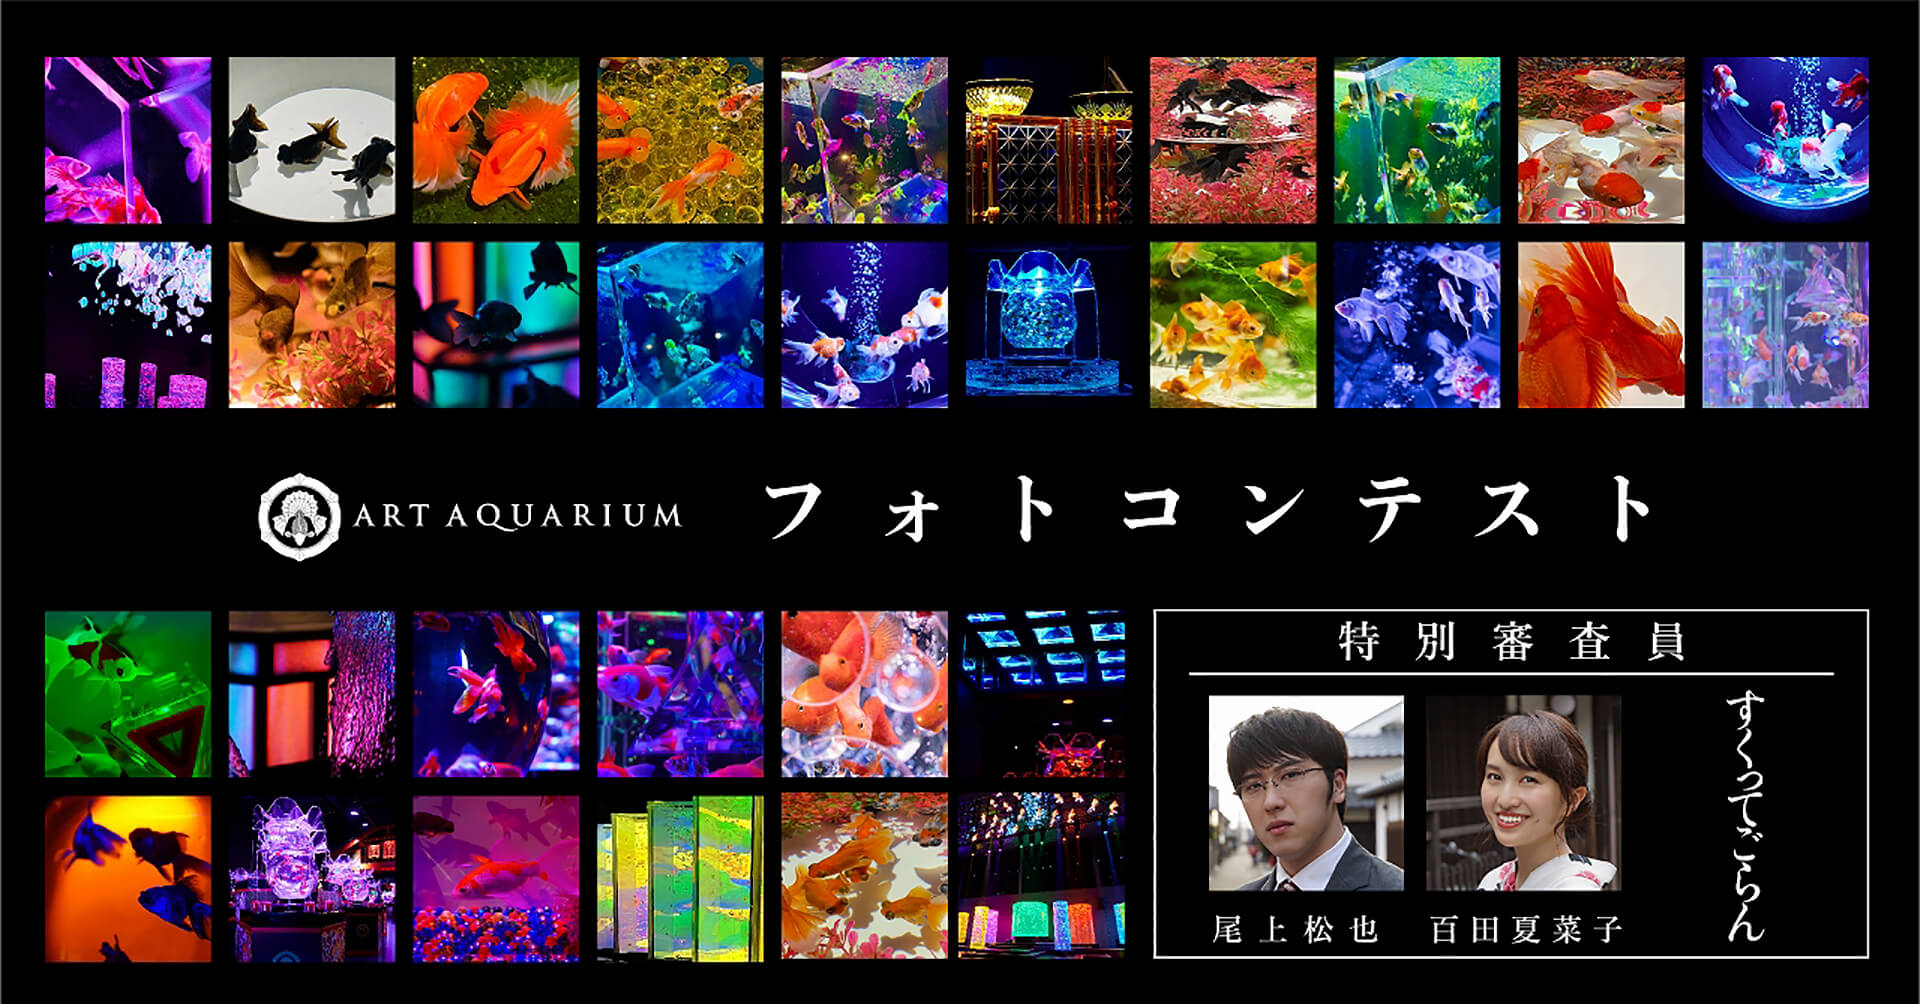 「アートアクアリウム美術館」×映画「すくってごらん」コラボイベント